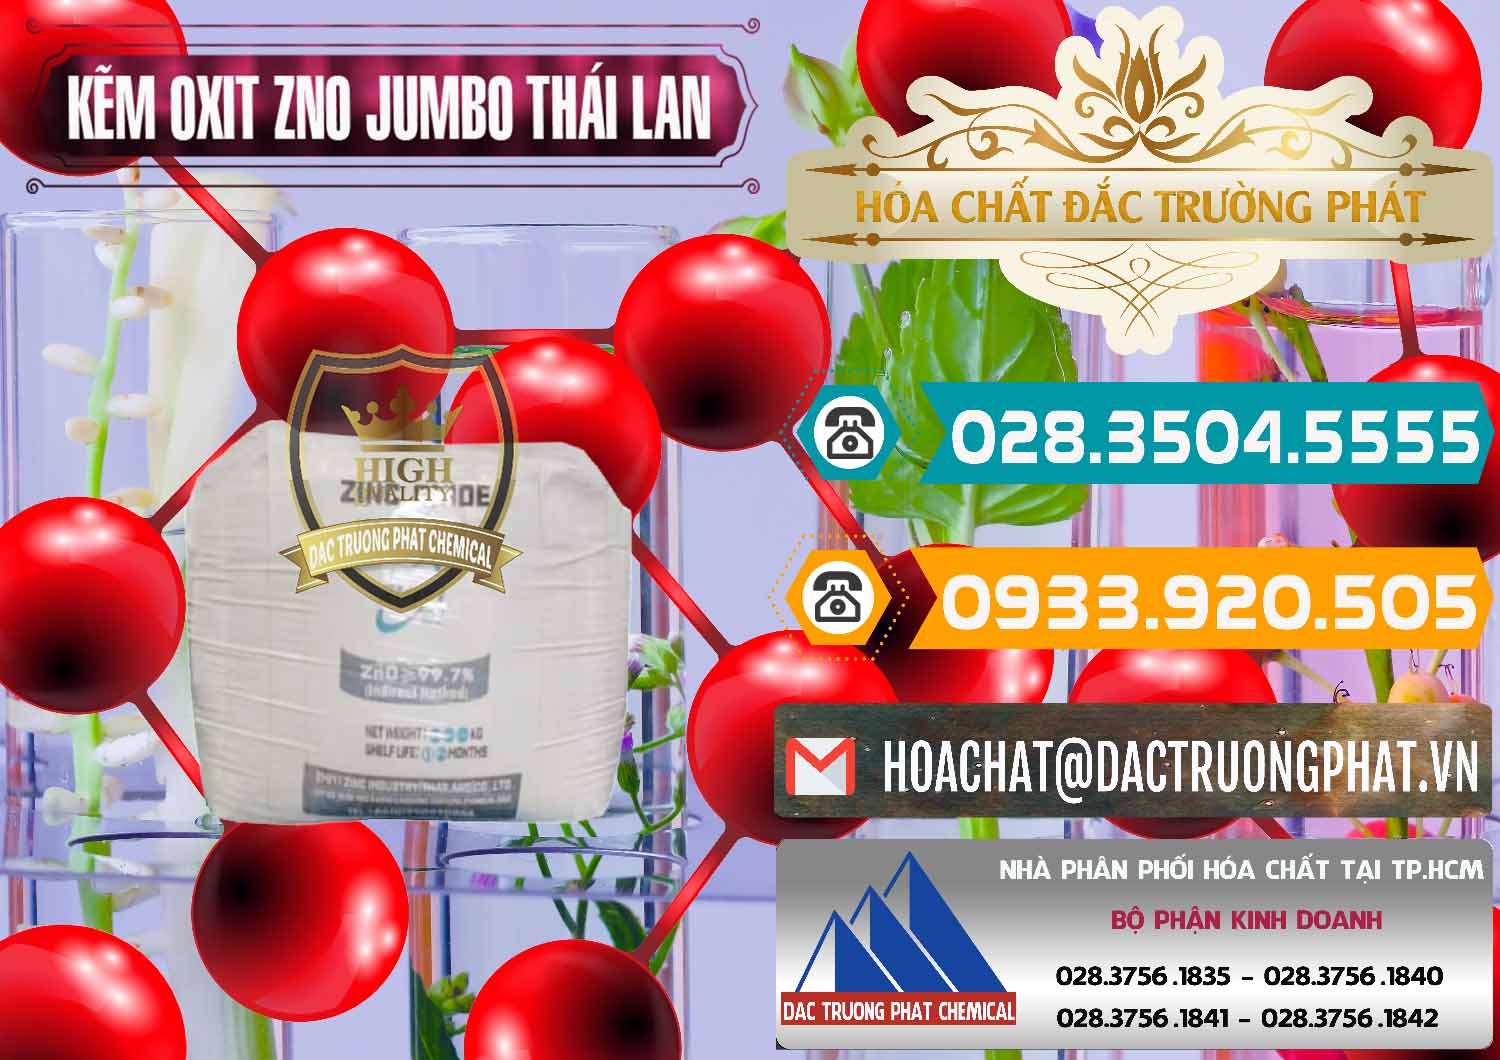 Cty cung cấp & bán Zinc Oxide - Bột Kẽm Oxit ZNO Jumbo Bành Thái Lan Thailand - 0370 - Đơn vị cung cấp và nhập khẩu hóa chất tại TP.HCM - congtyhoachat.vn